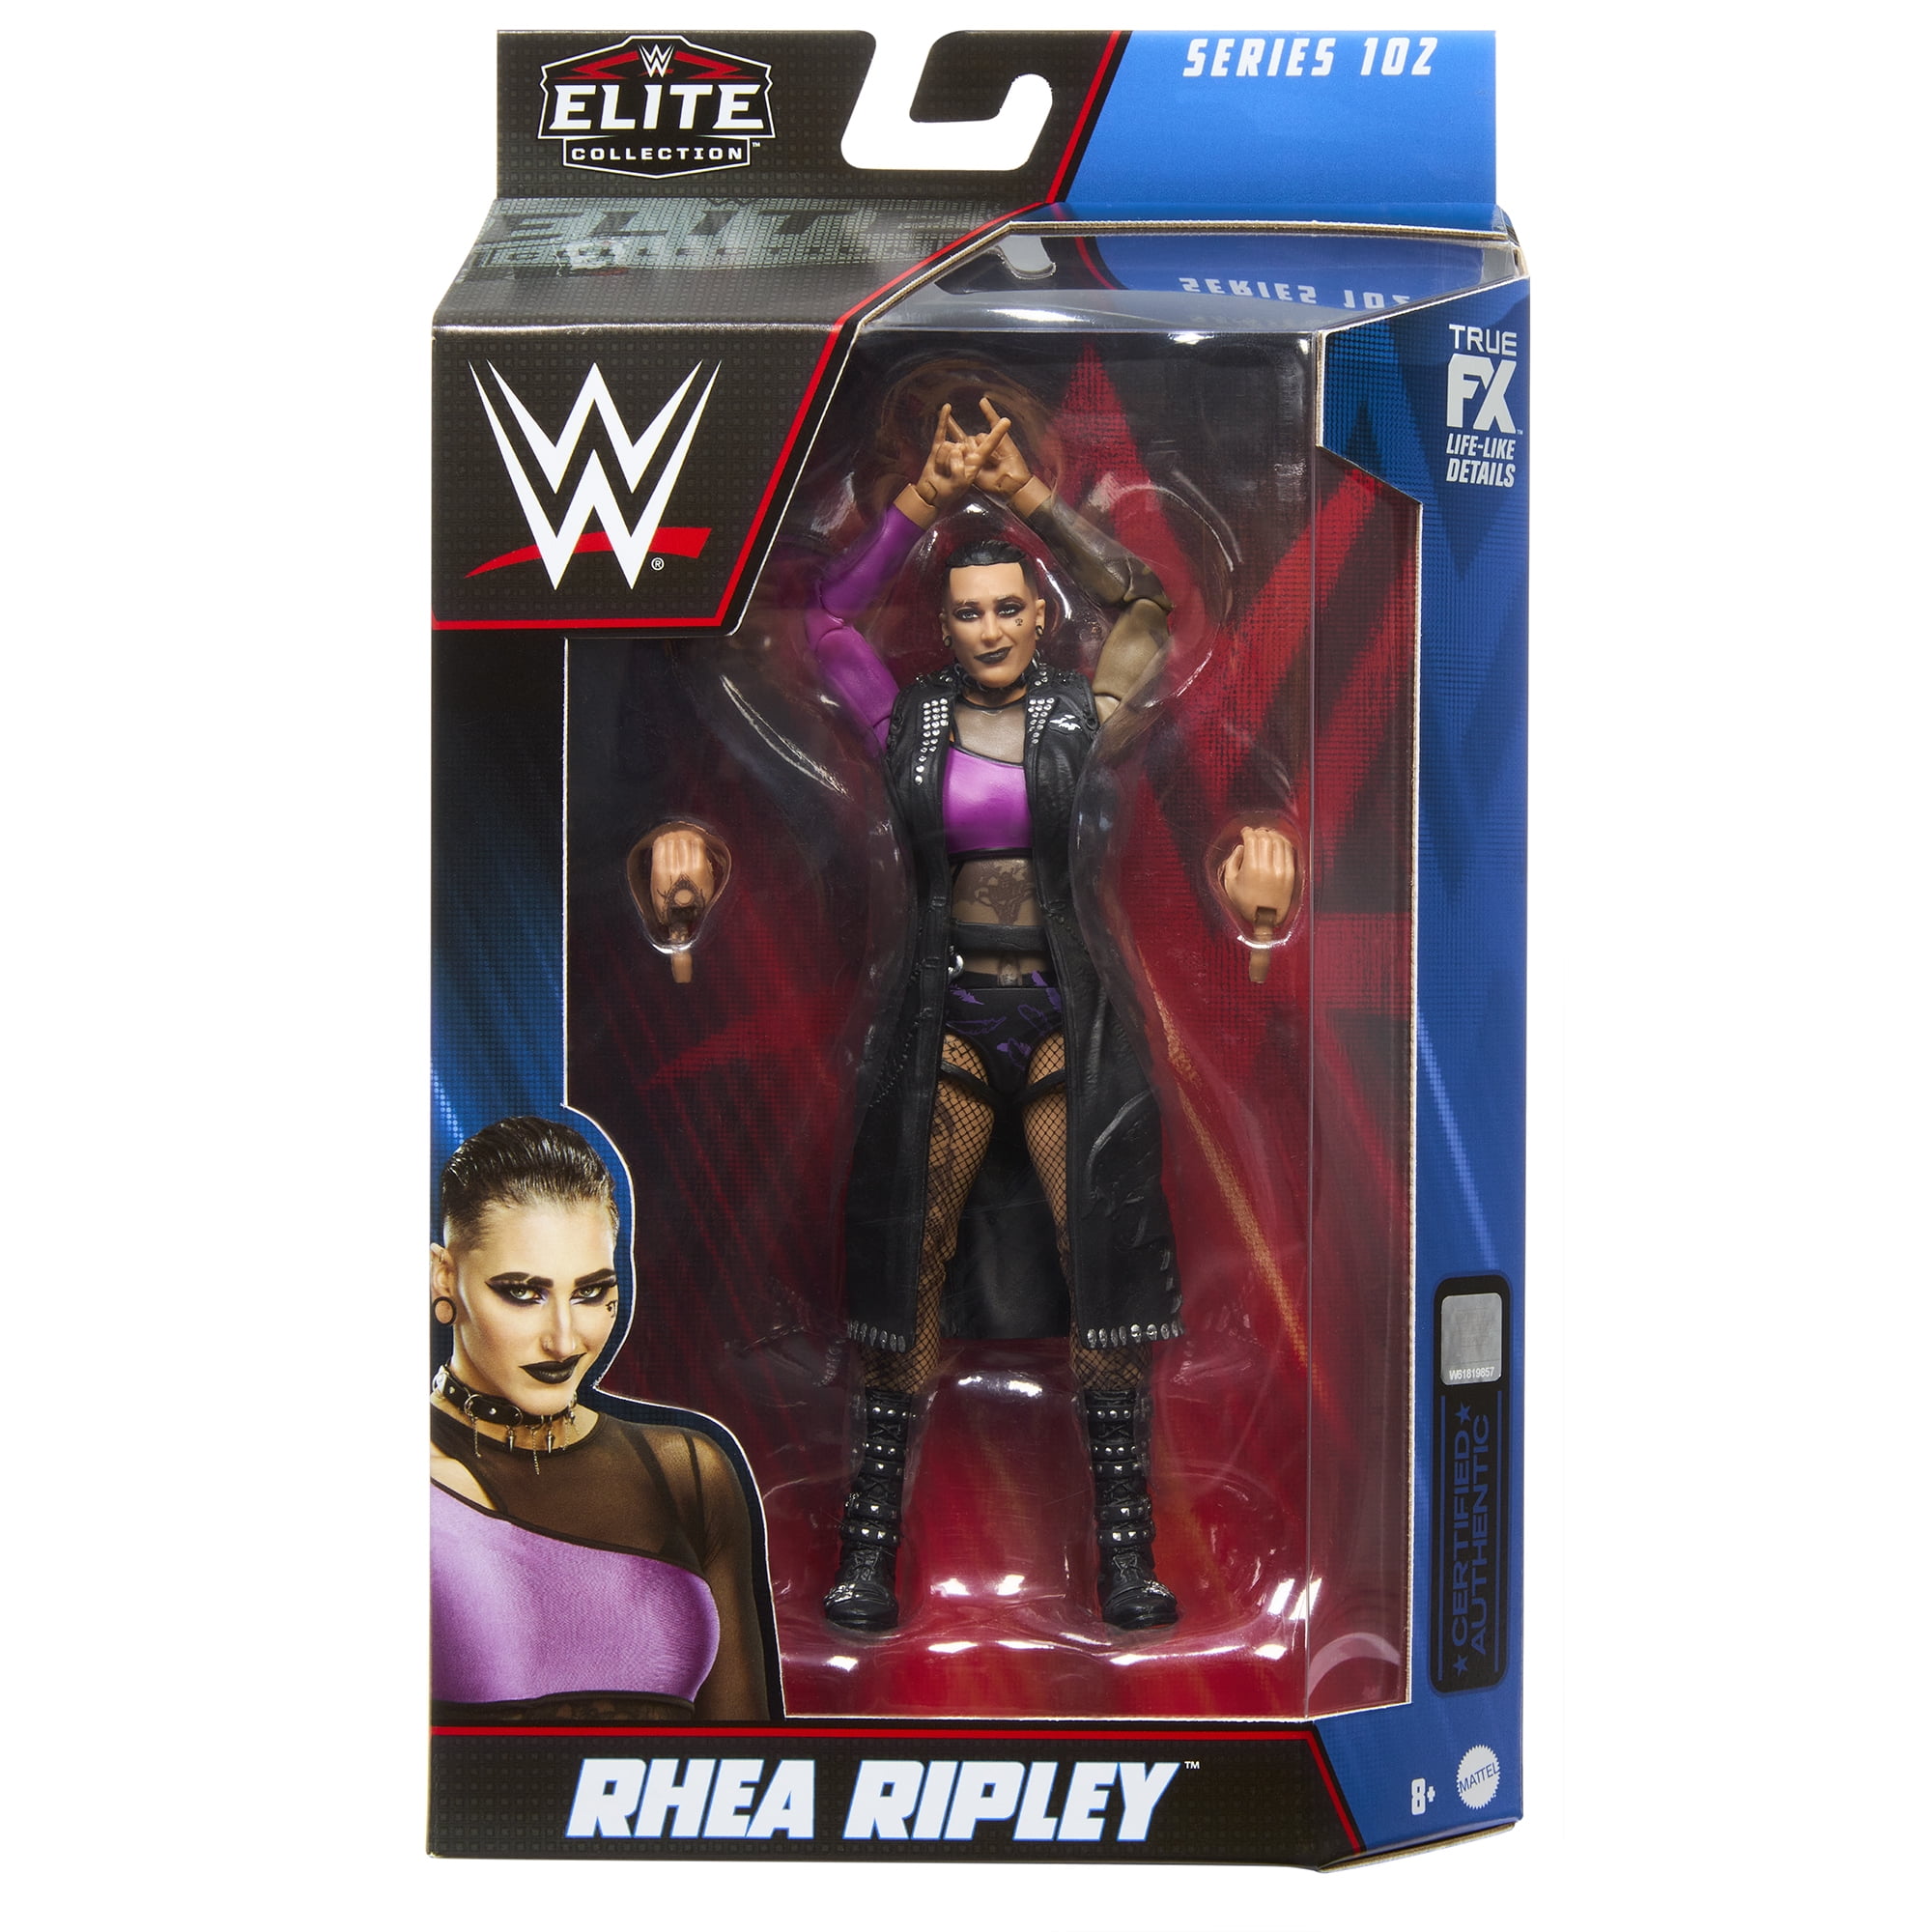 Rhea Ripley - WWE Elite 102 Mattel WWE Toy Wrestling Action Figure